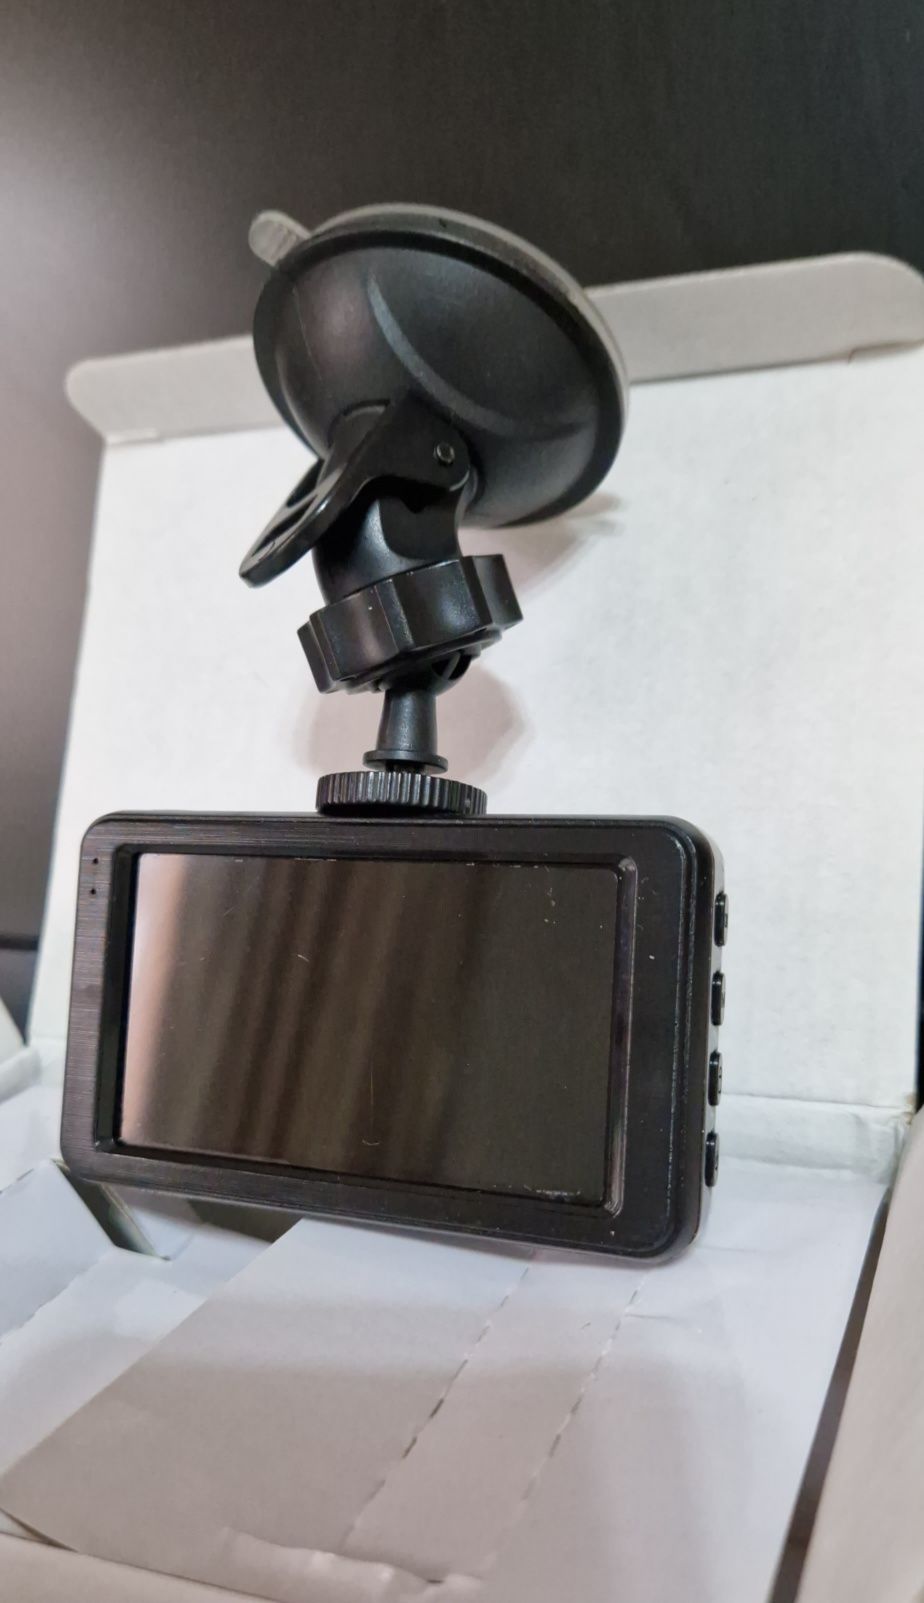 Camera video de bord auto model T611
Specificatii
CARACTERISTICI GENER